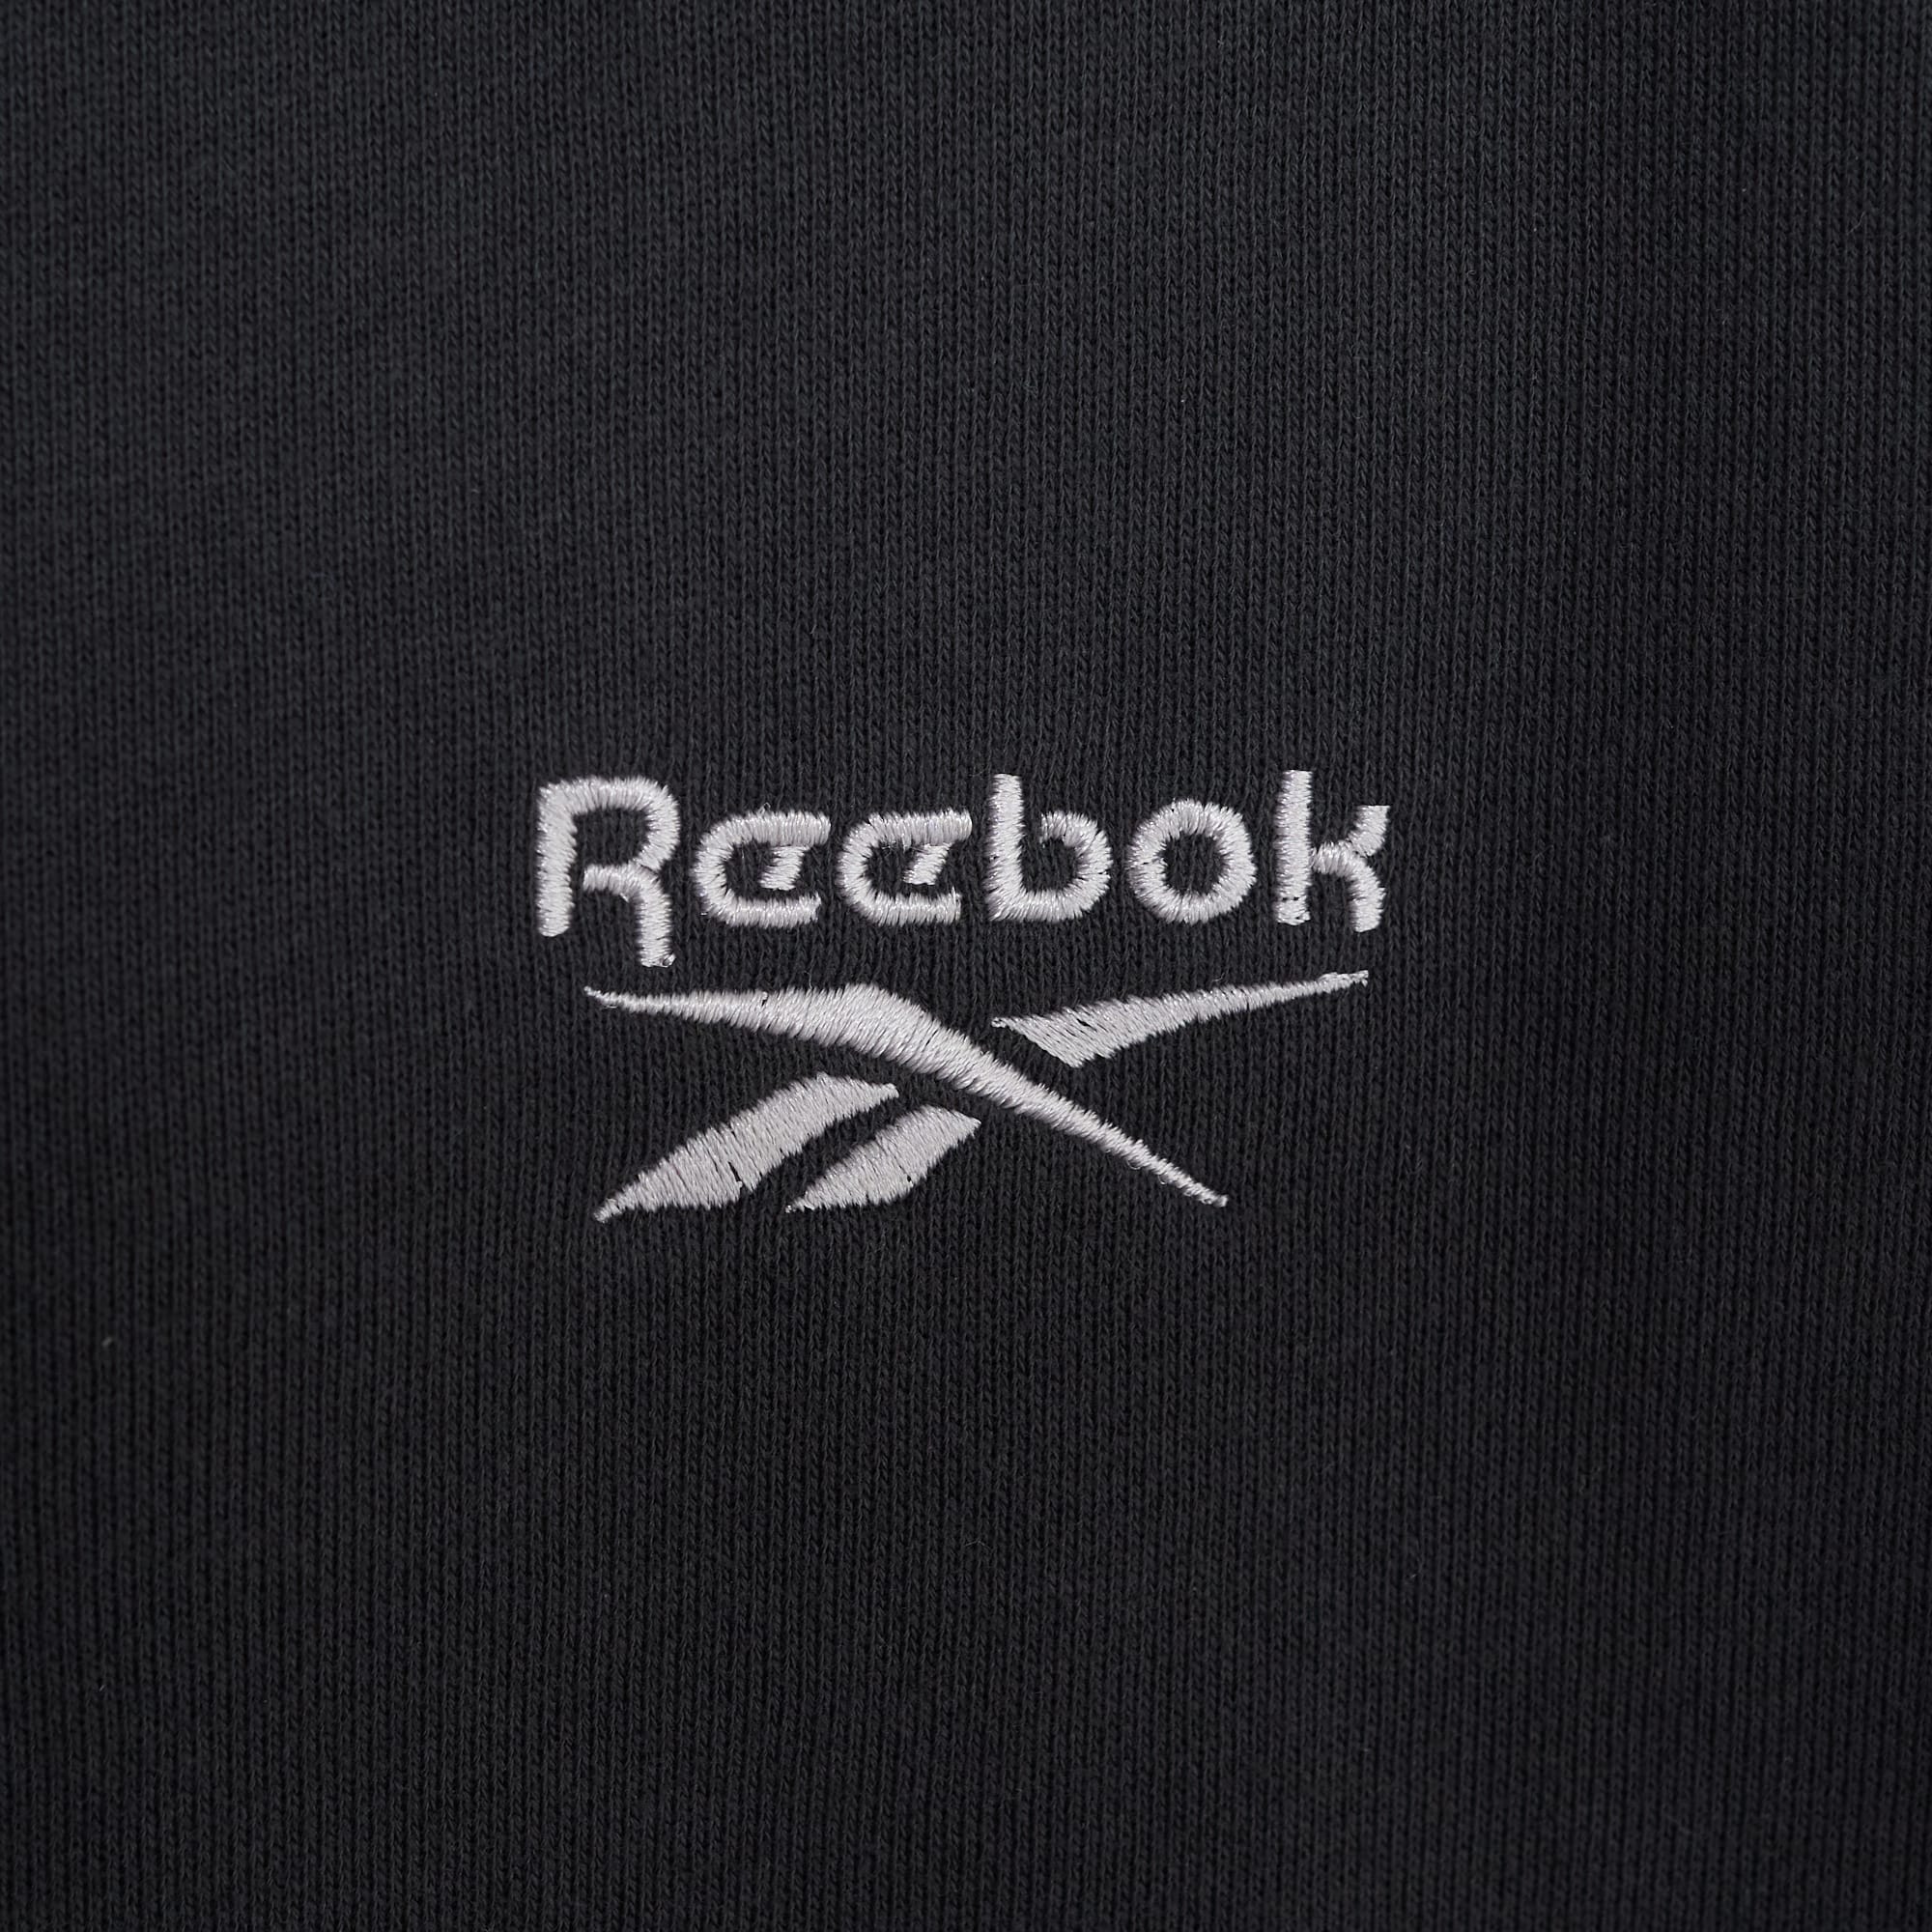 Reebok別注スウェットに新色「ブラック」が追加！ | Daily russet 